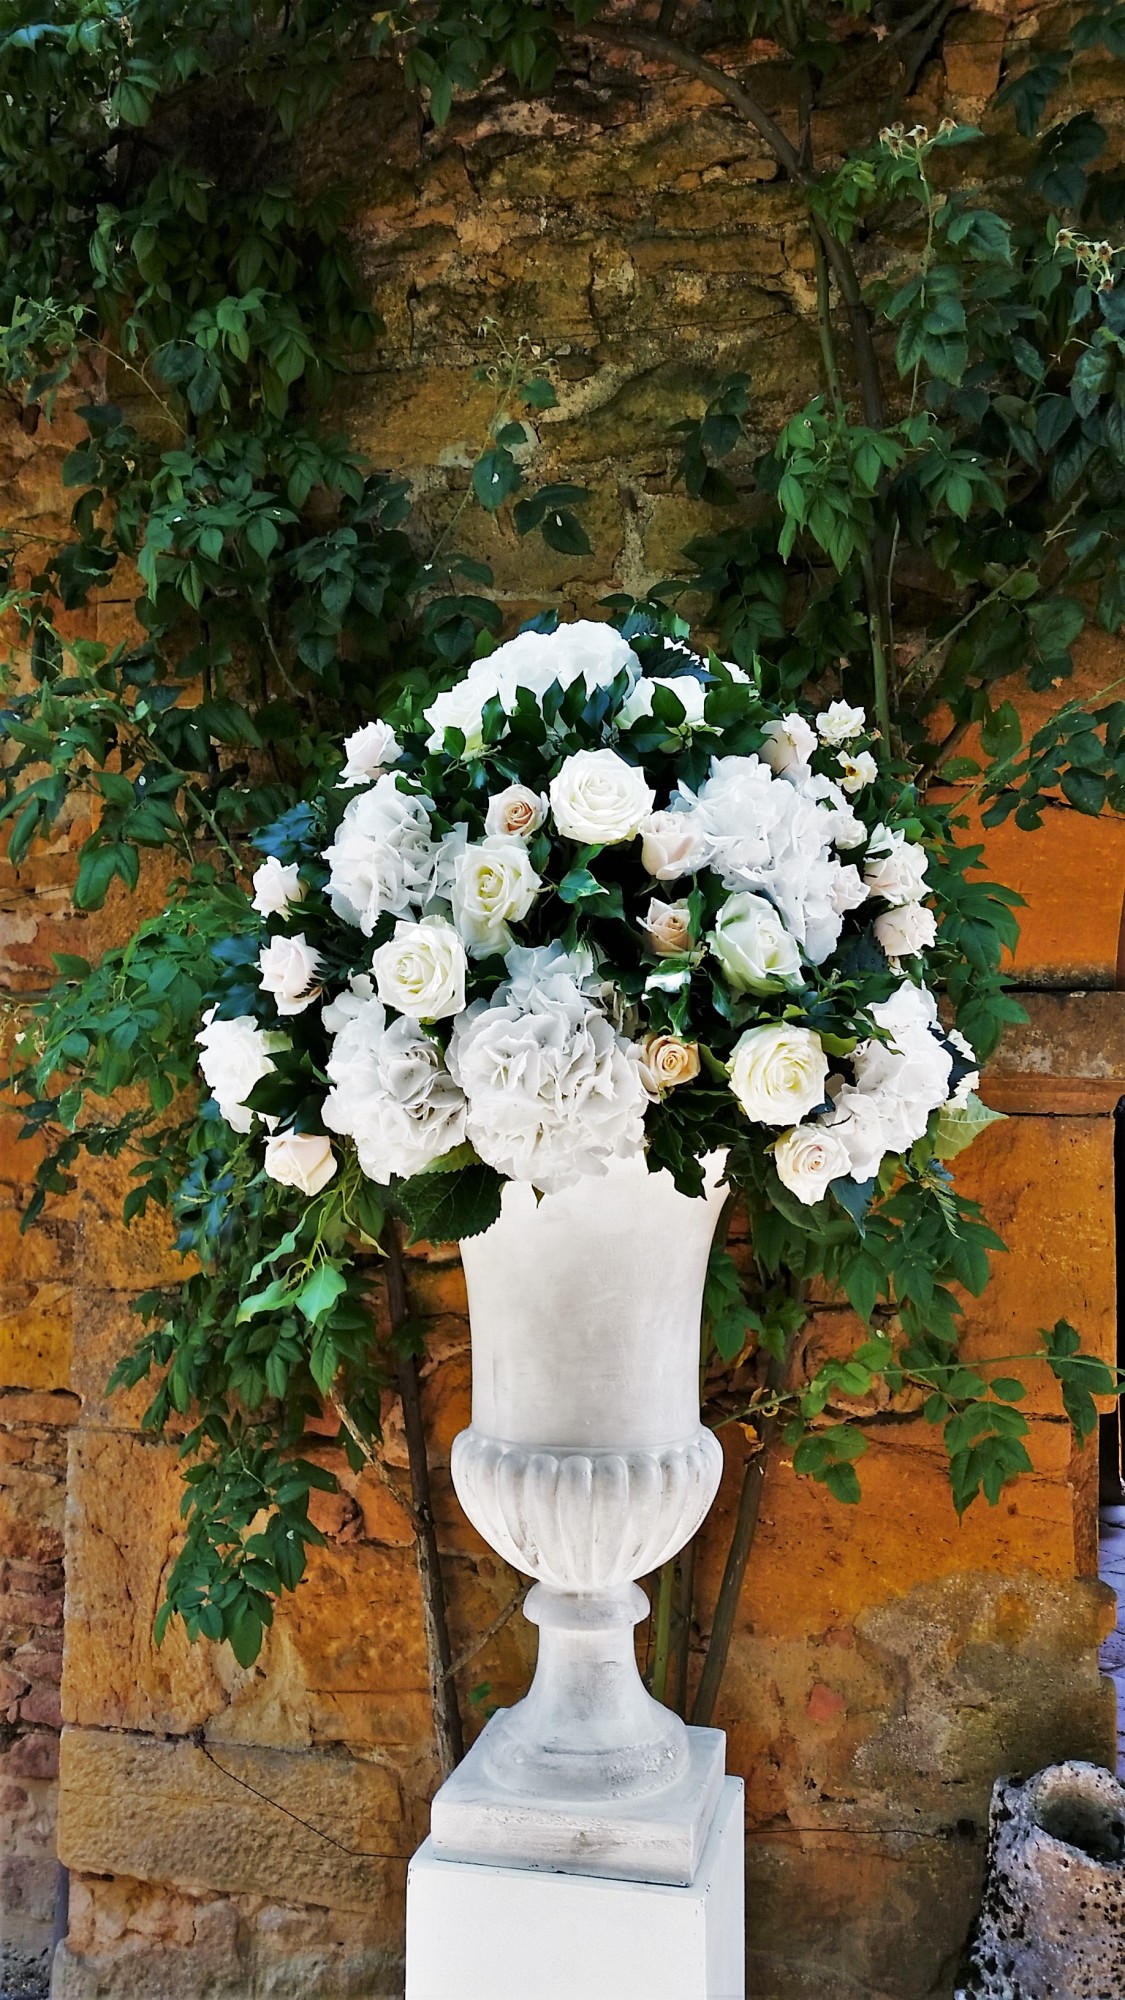 décoration florale d'accueil romantique